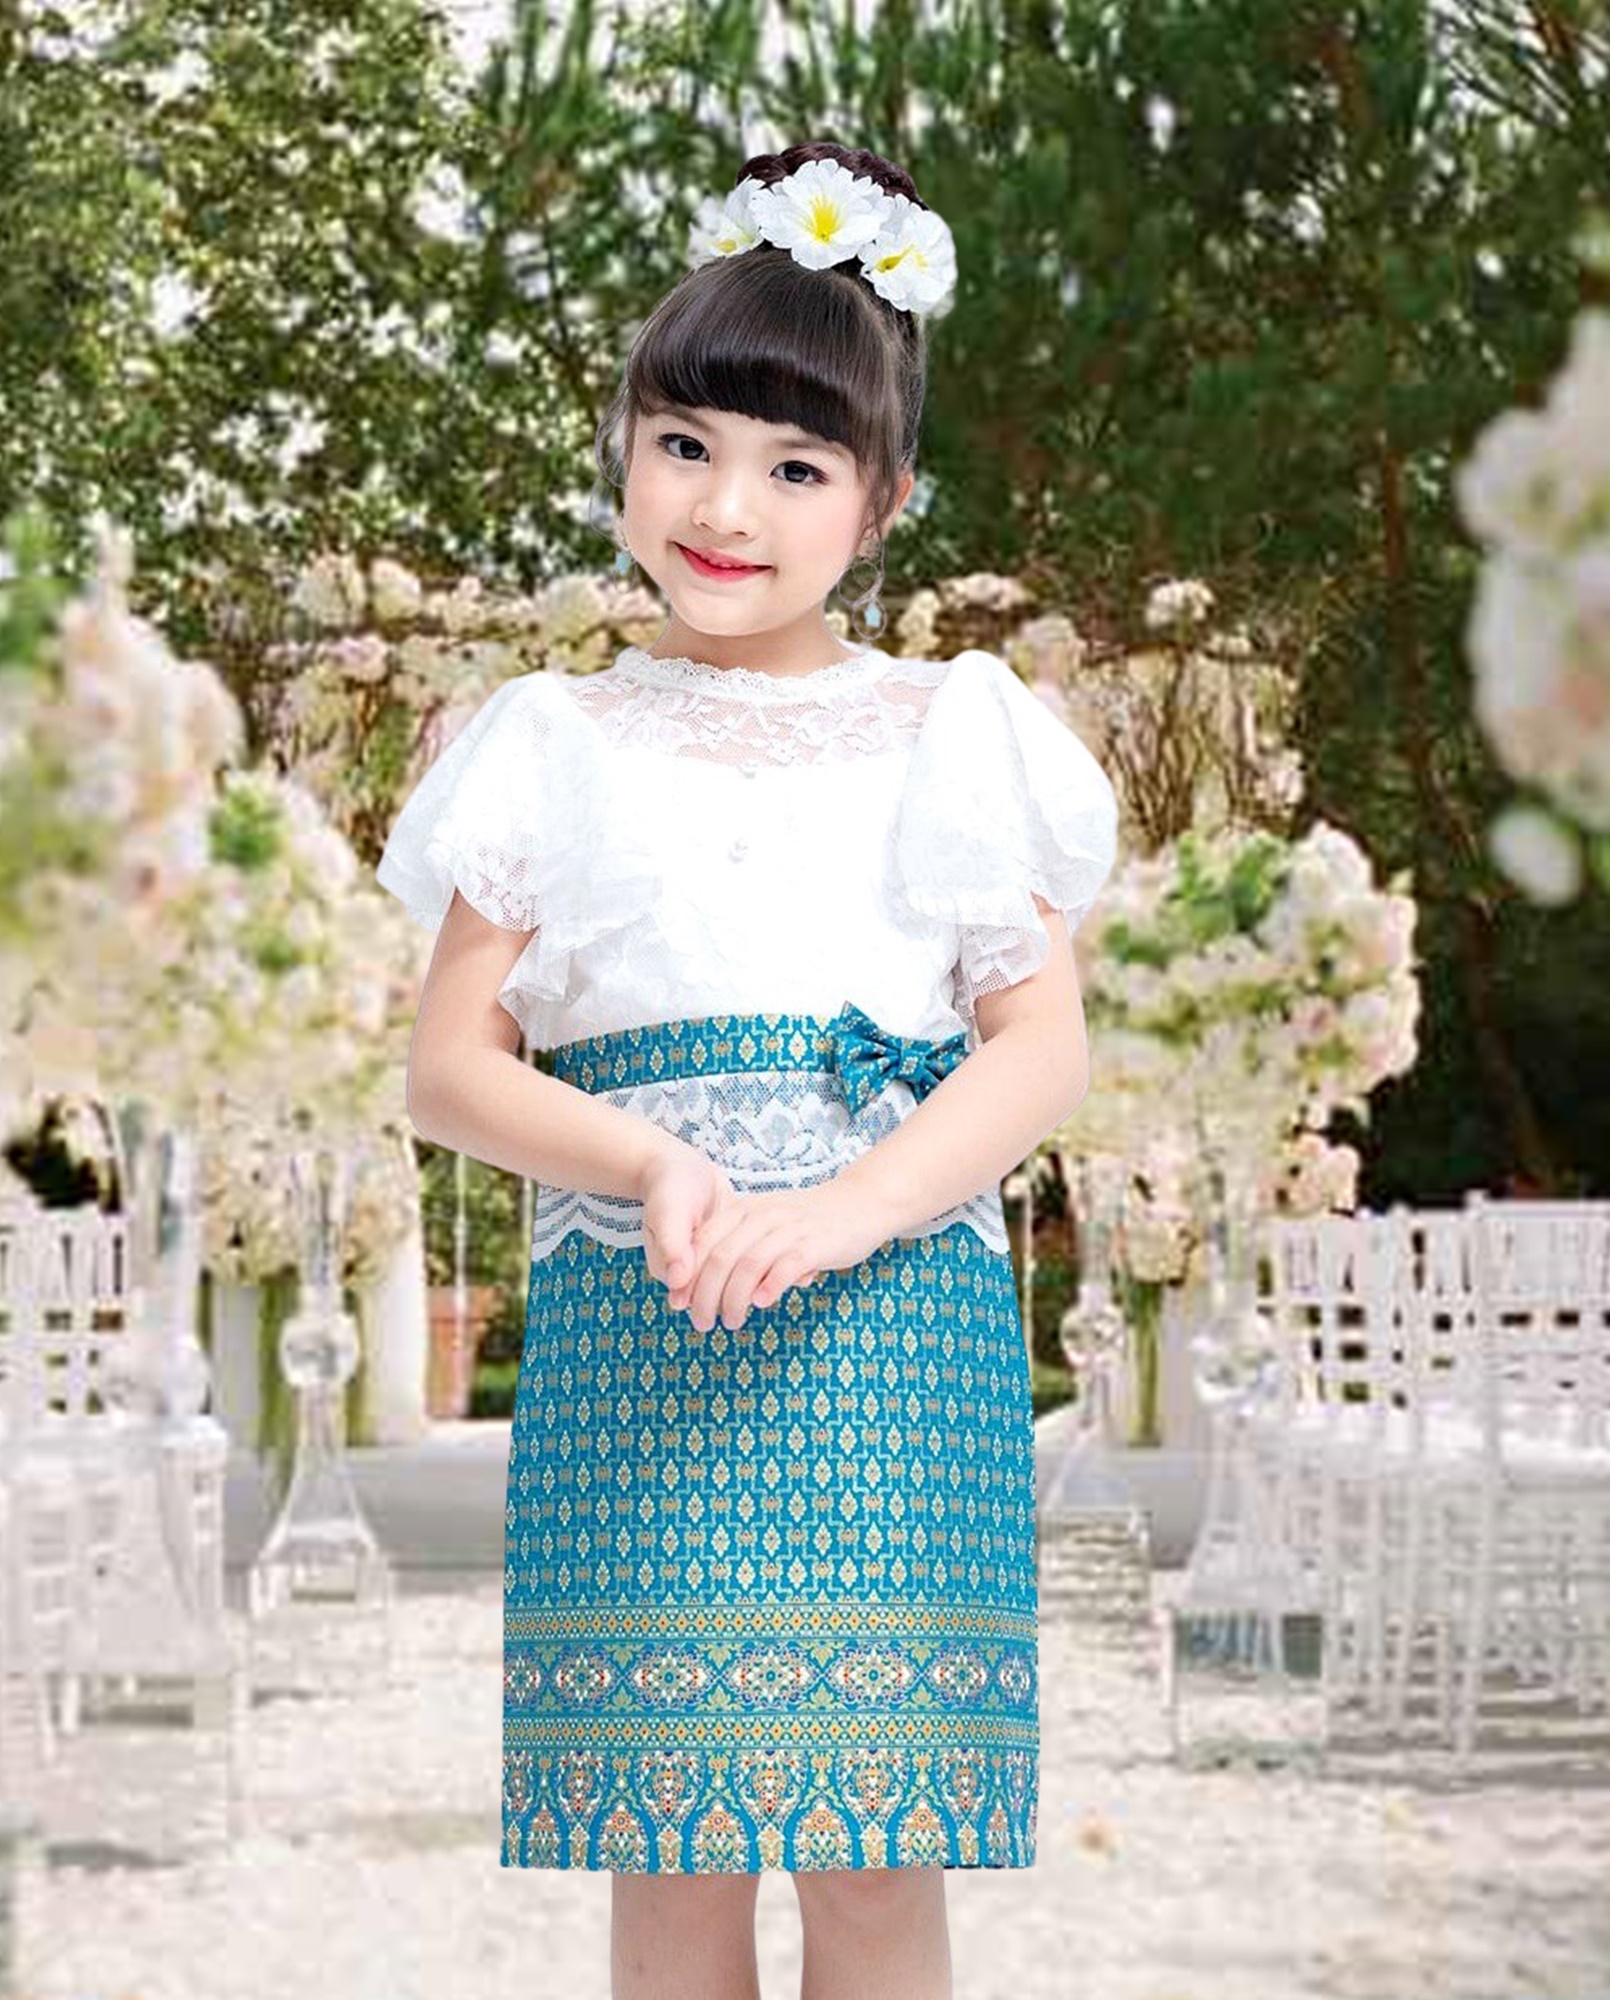 โปรโมชั่น ชุดไทย ชุดไทยประยุกต์ ชุดไทยลูกไม้ เด็กหญิง Mae Mali ขาว-ฟ้า เดรสชุดไทย เดรสลูกไม้ เดรสผ้าไทย Thai Dress Thai Lace Costume